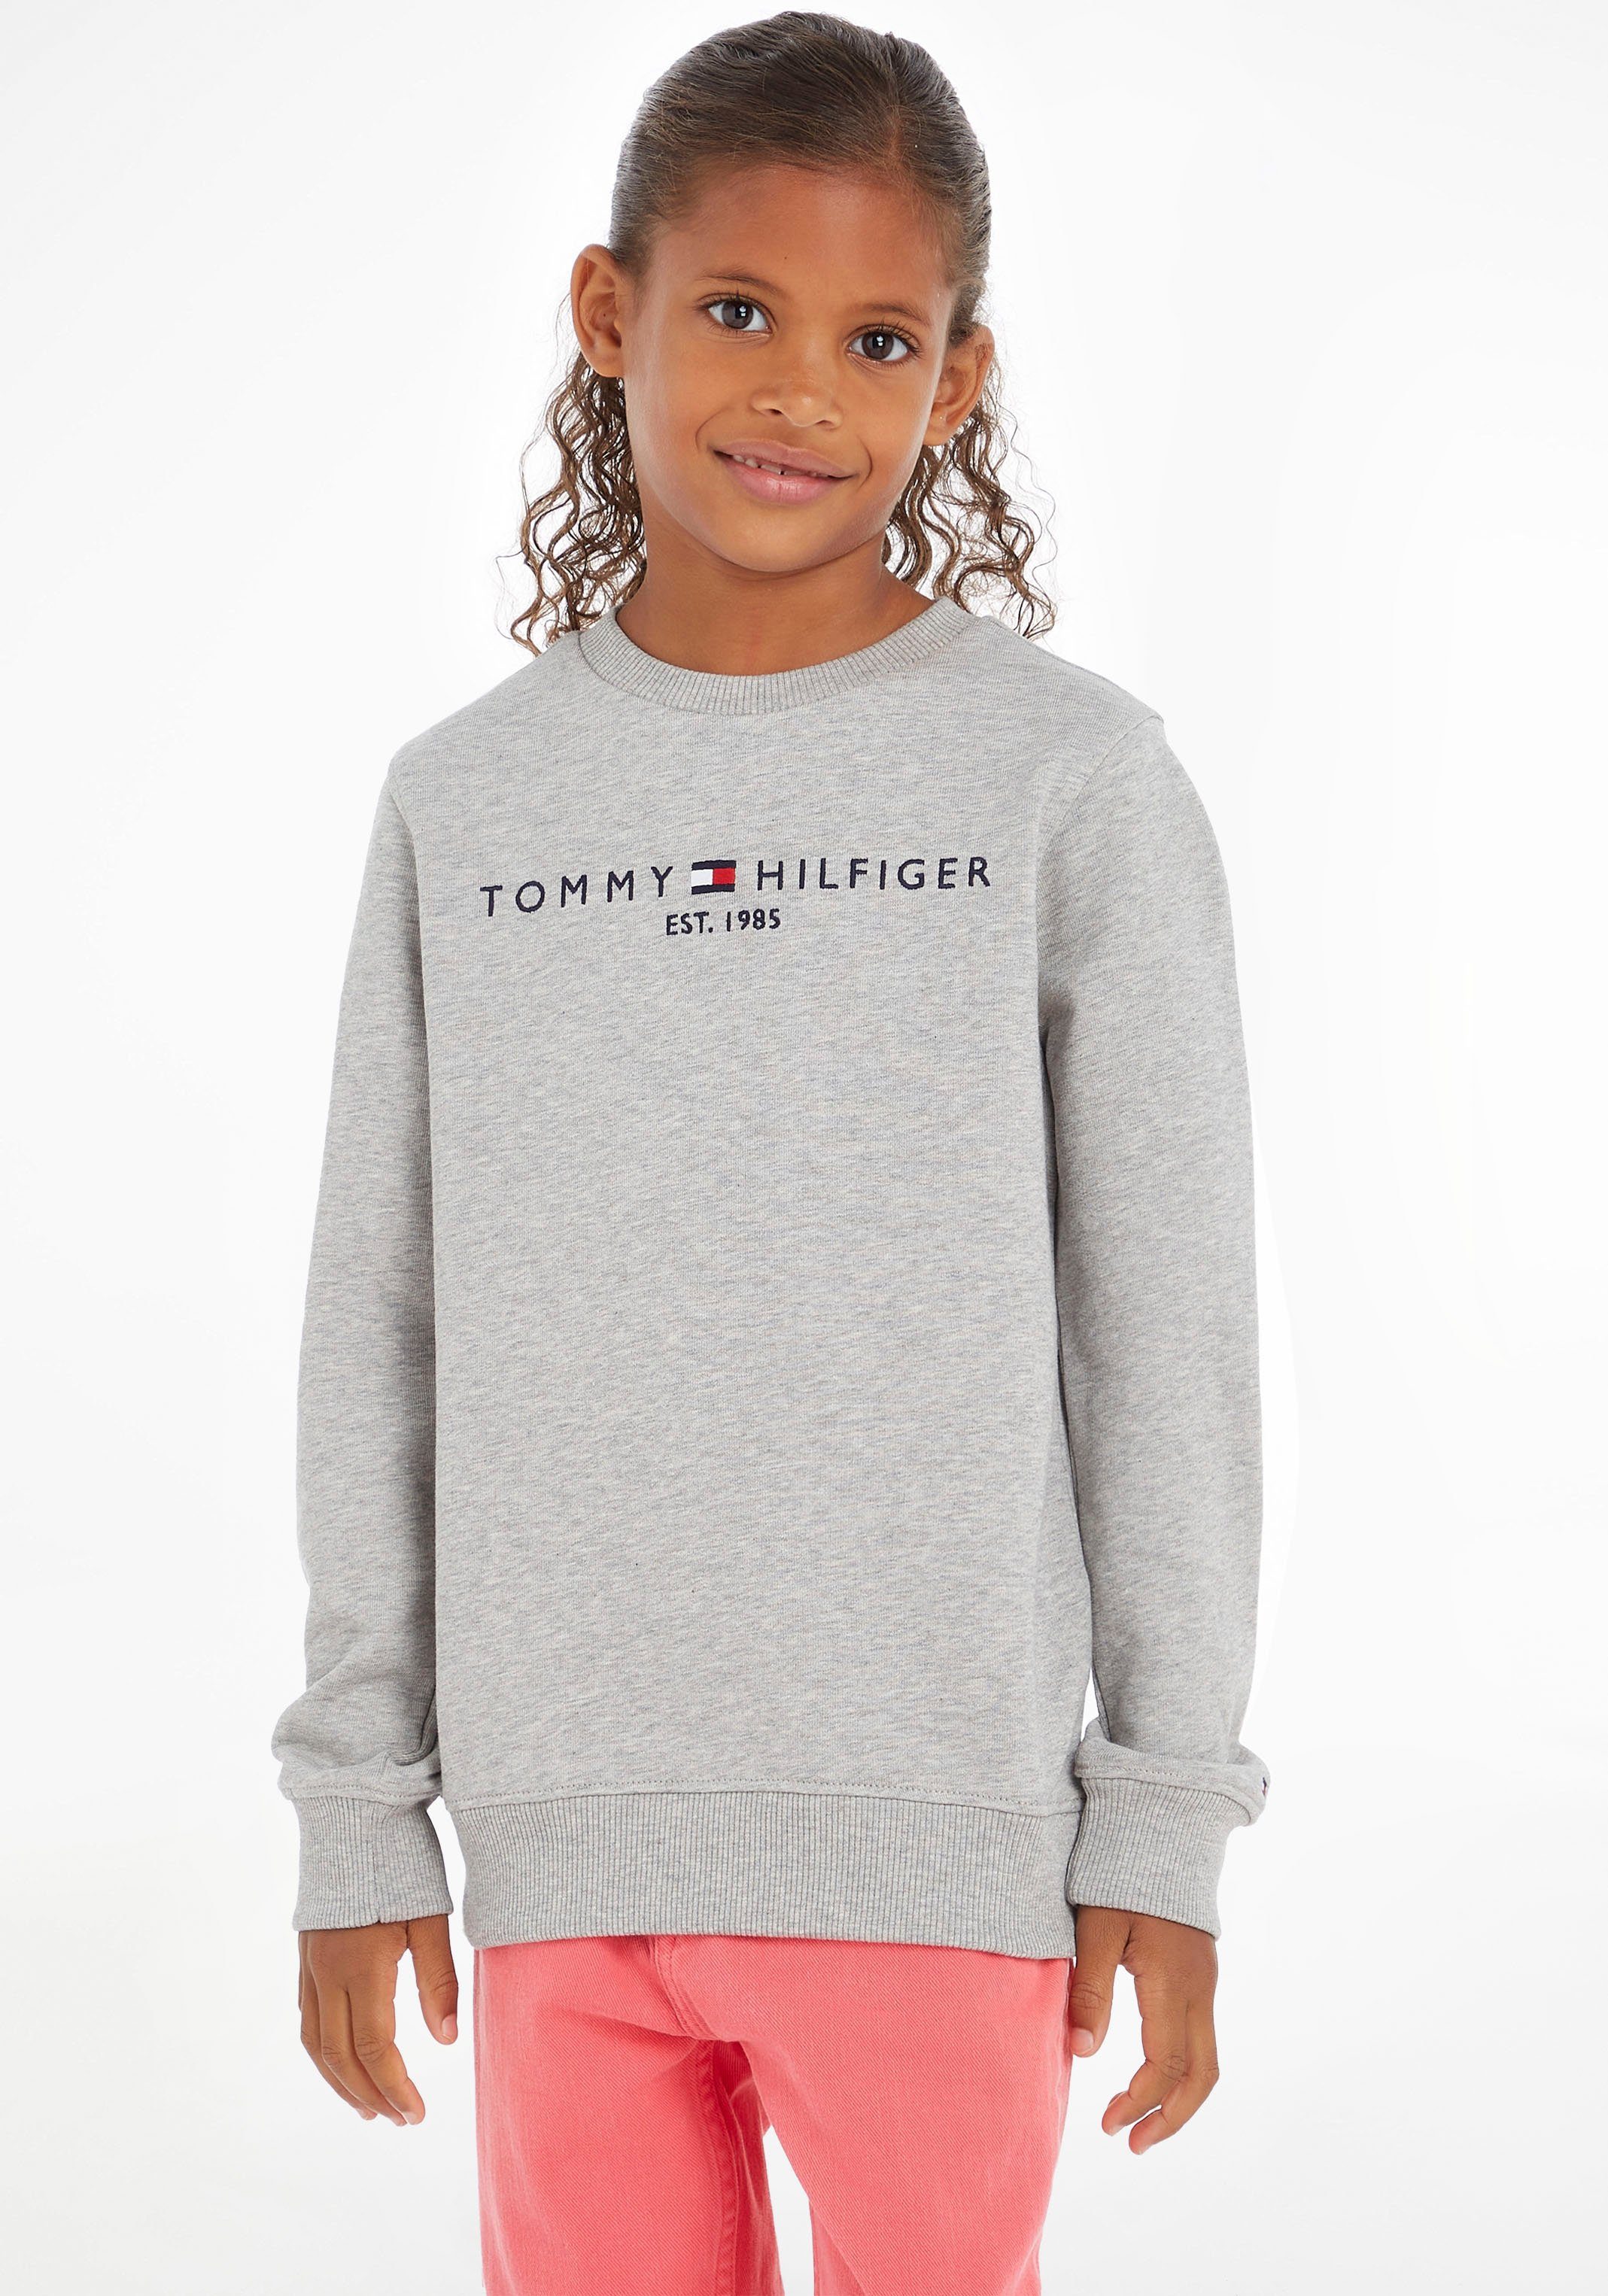 Tommy Hilfiger Sweatshirt ESSENTIAL SWEATSHIRT Kids MiniMe,für Kinder und Jungen Junior Mädchen